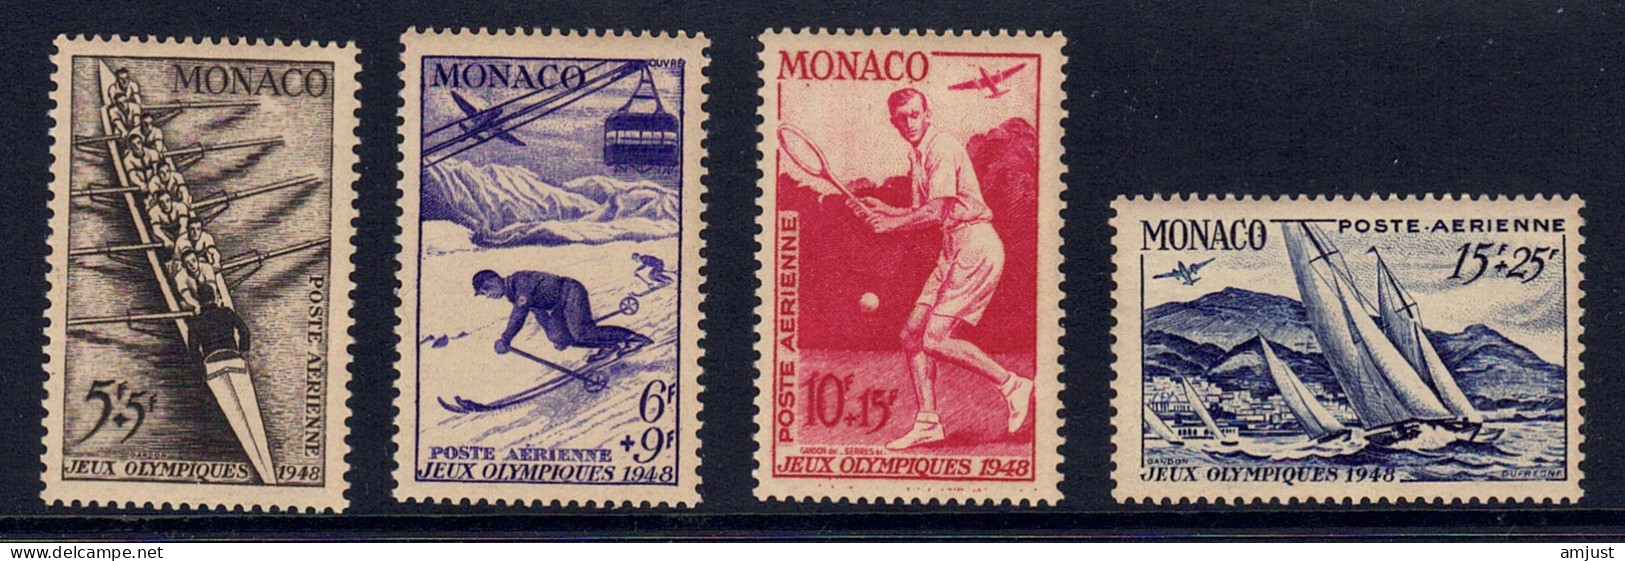 Monaco // Poste Aérienne1948  // Jeux Olympiques De Londres  Timbres Neufs** MNH  No. Y&T 32 à 35 - Poste Aérienne